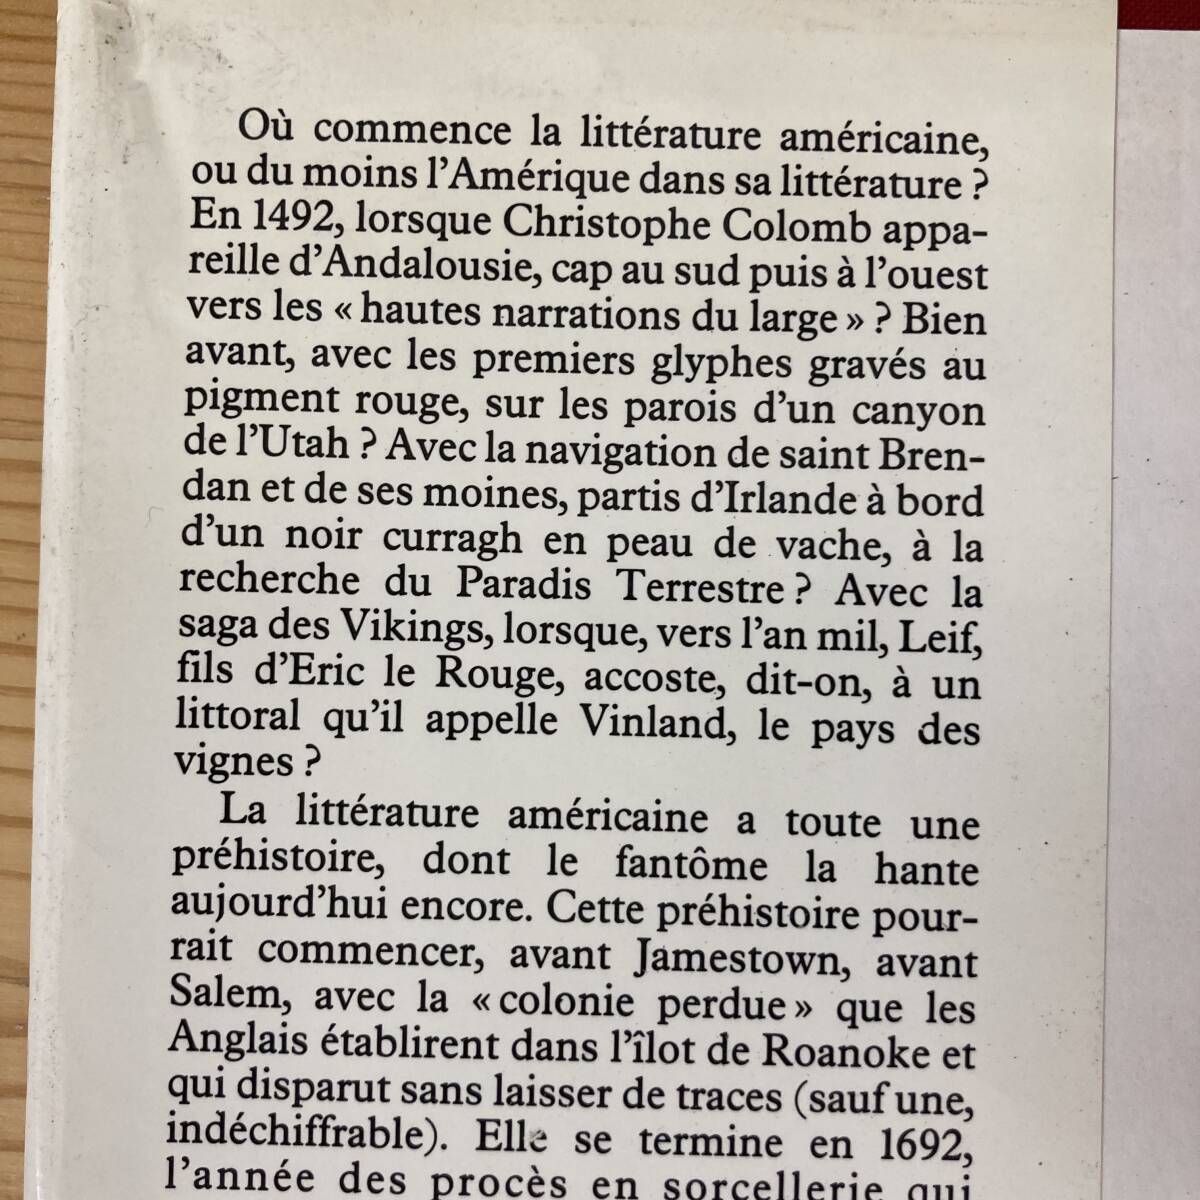 【仏語洋書】Histoire de la litterature americaine: Notre demi-siecle 1939-1989 / Pierre-Yves Petillon（著）【アメリカ文学史】_画像4